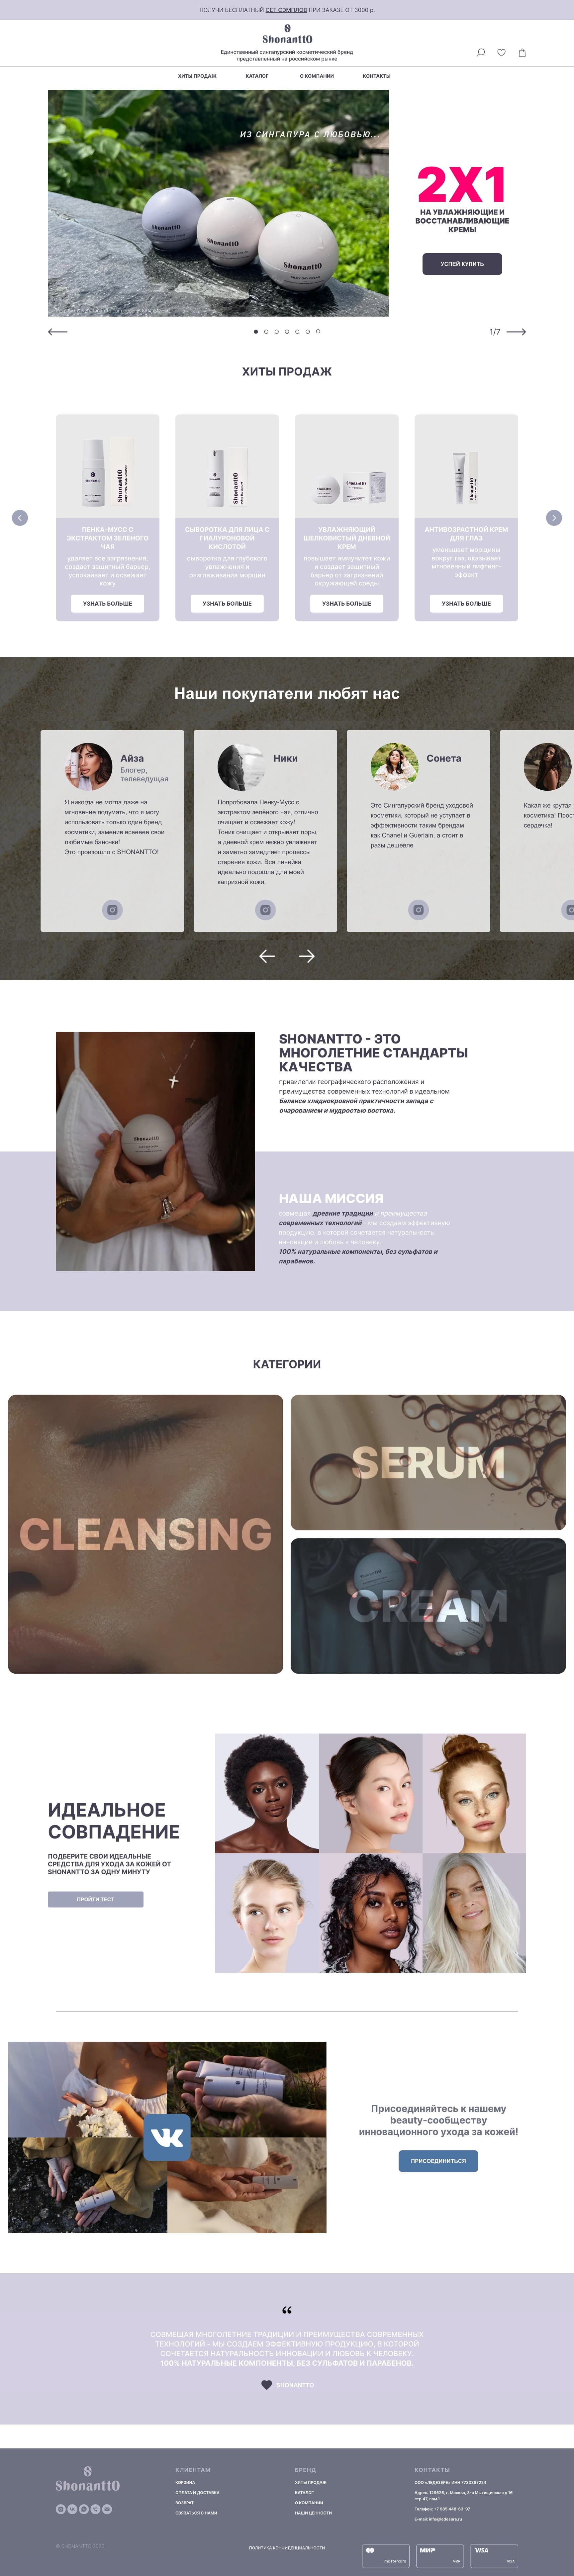 Пример посадочной страницы сайта для для парфюмерии из Сингапура